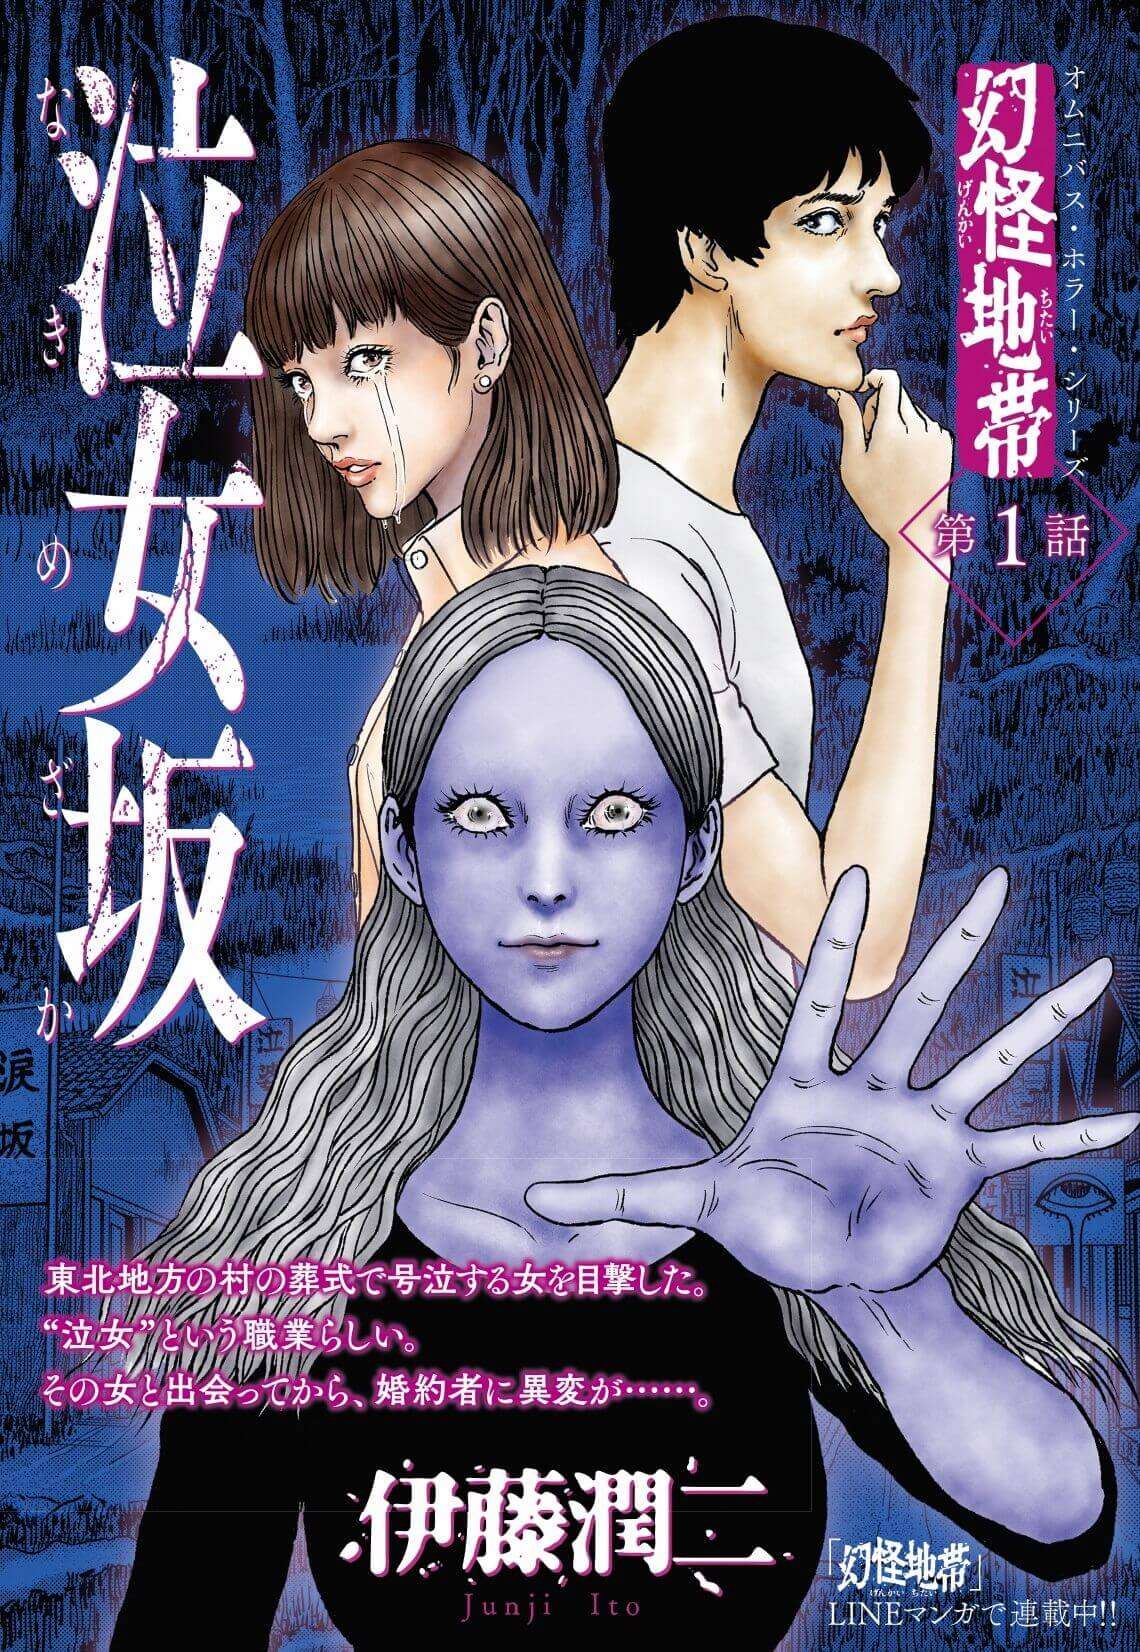 Genkai Chitai - Manga de Junji Ito entra no Arc Final